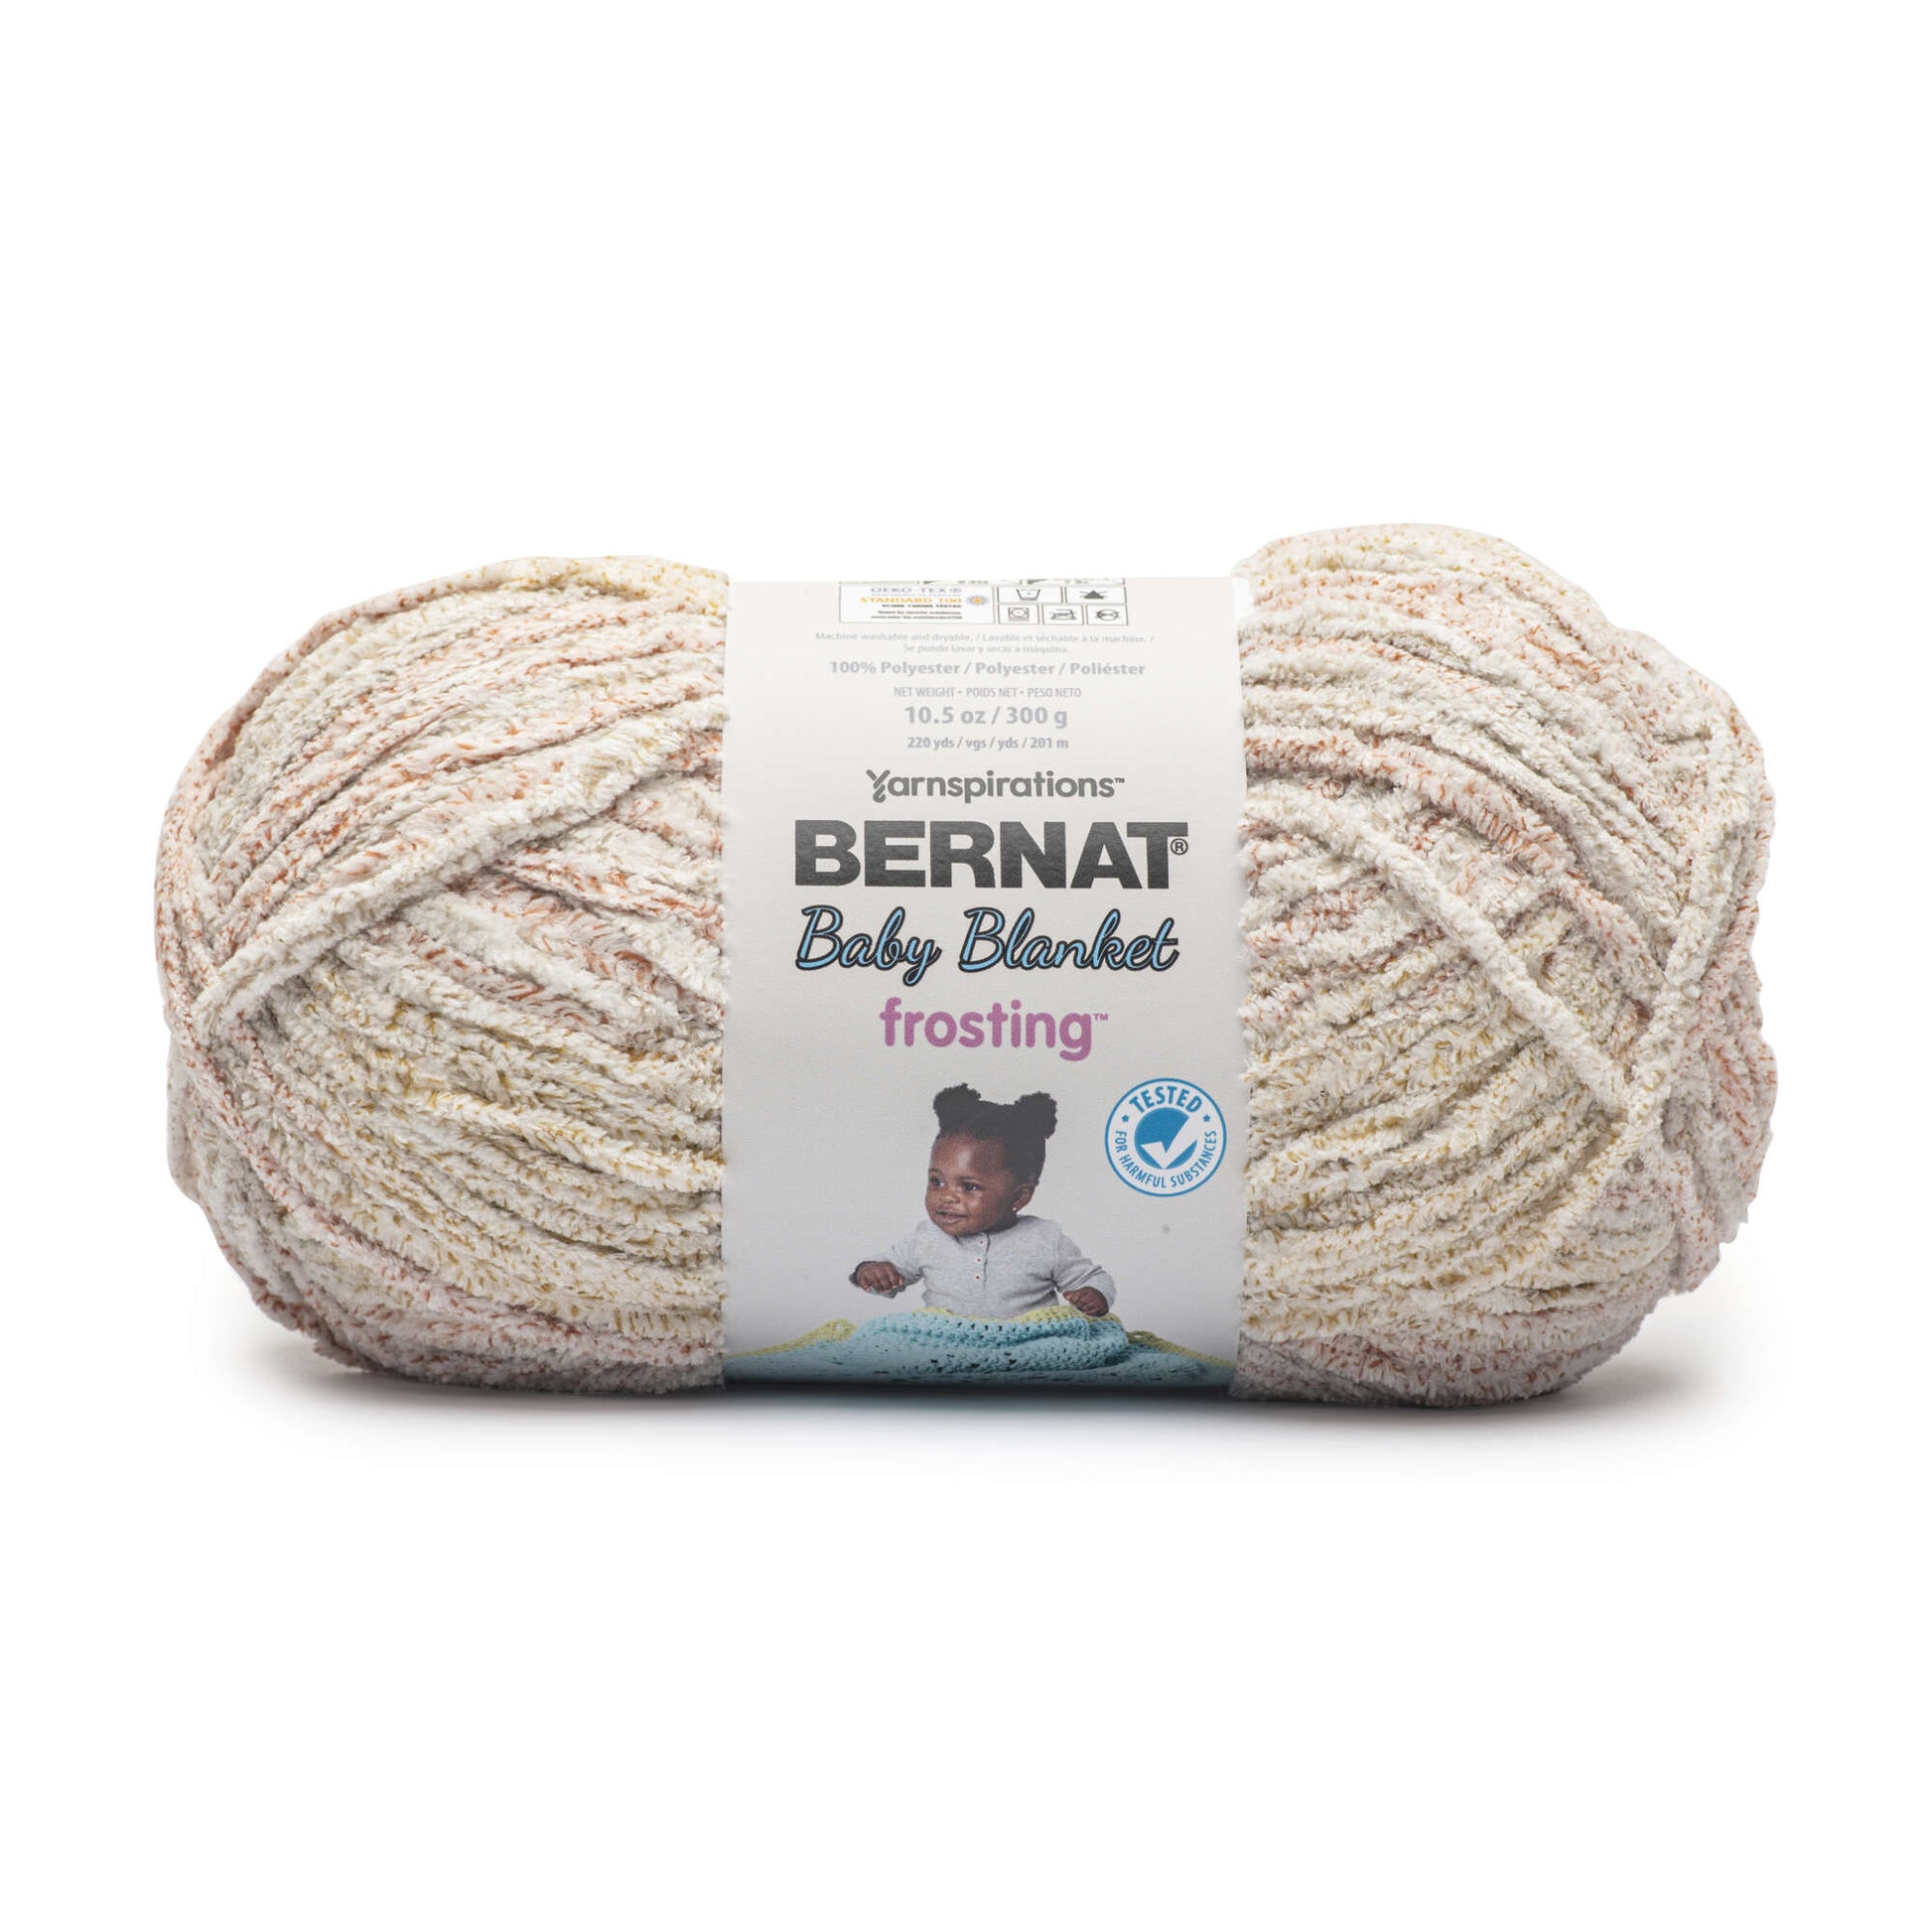 Bernat Baby Blanket Frosting Yarn (300g/10.6oz) | Yarnspirations